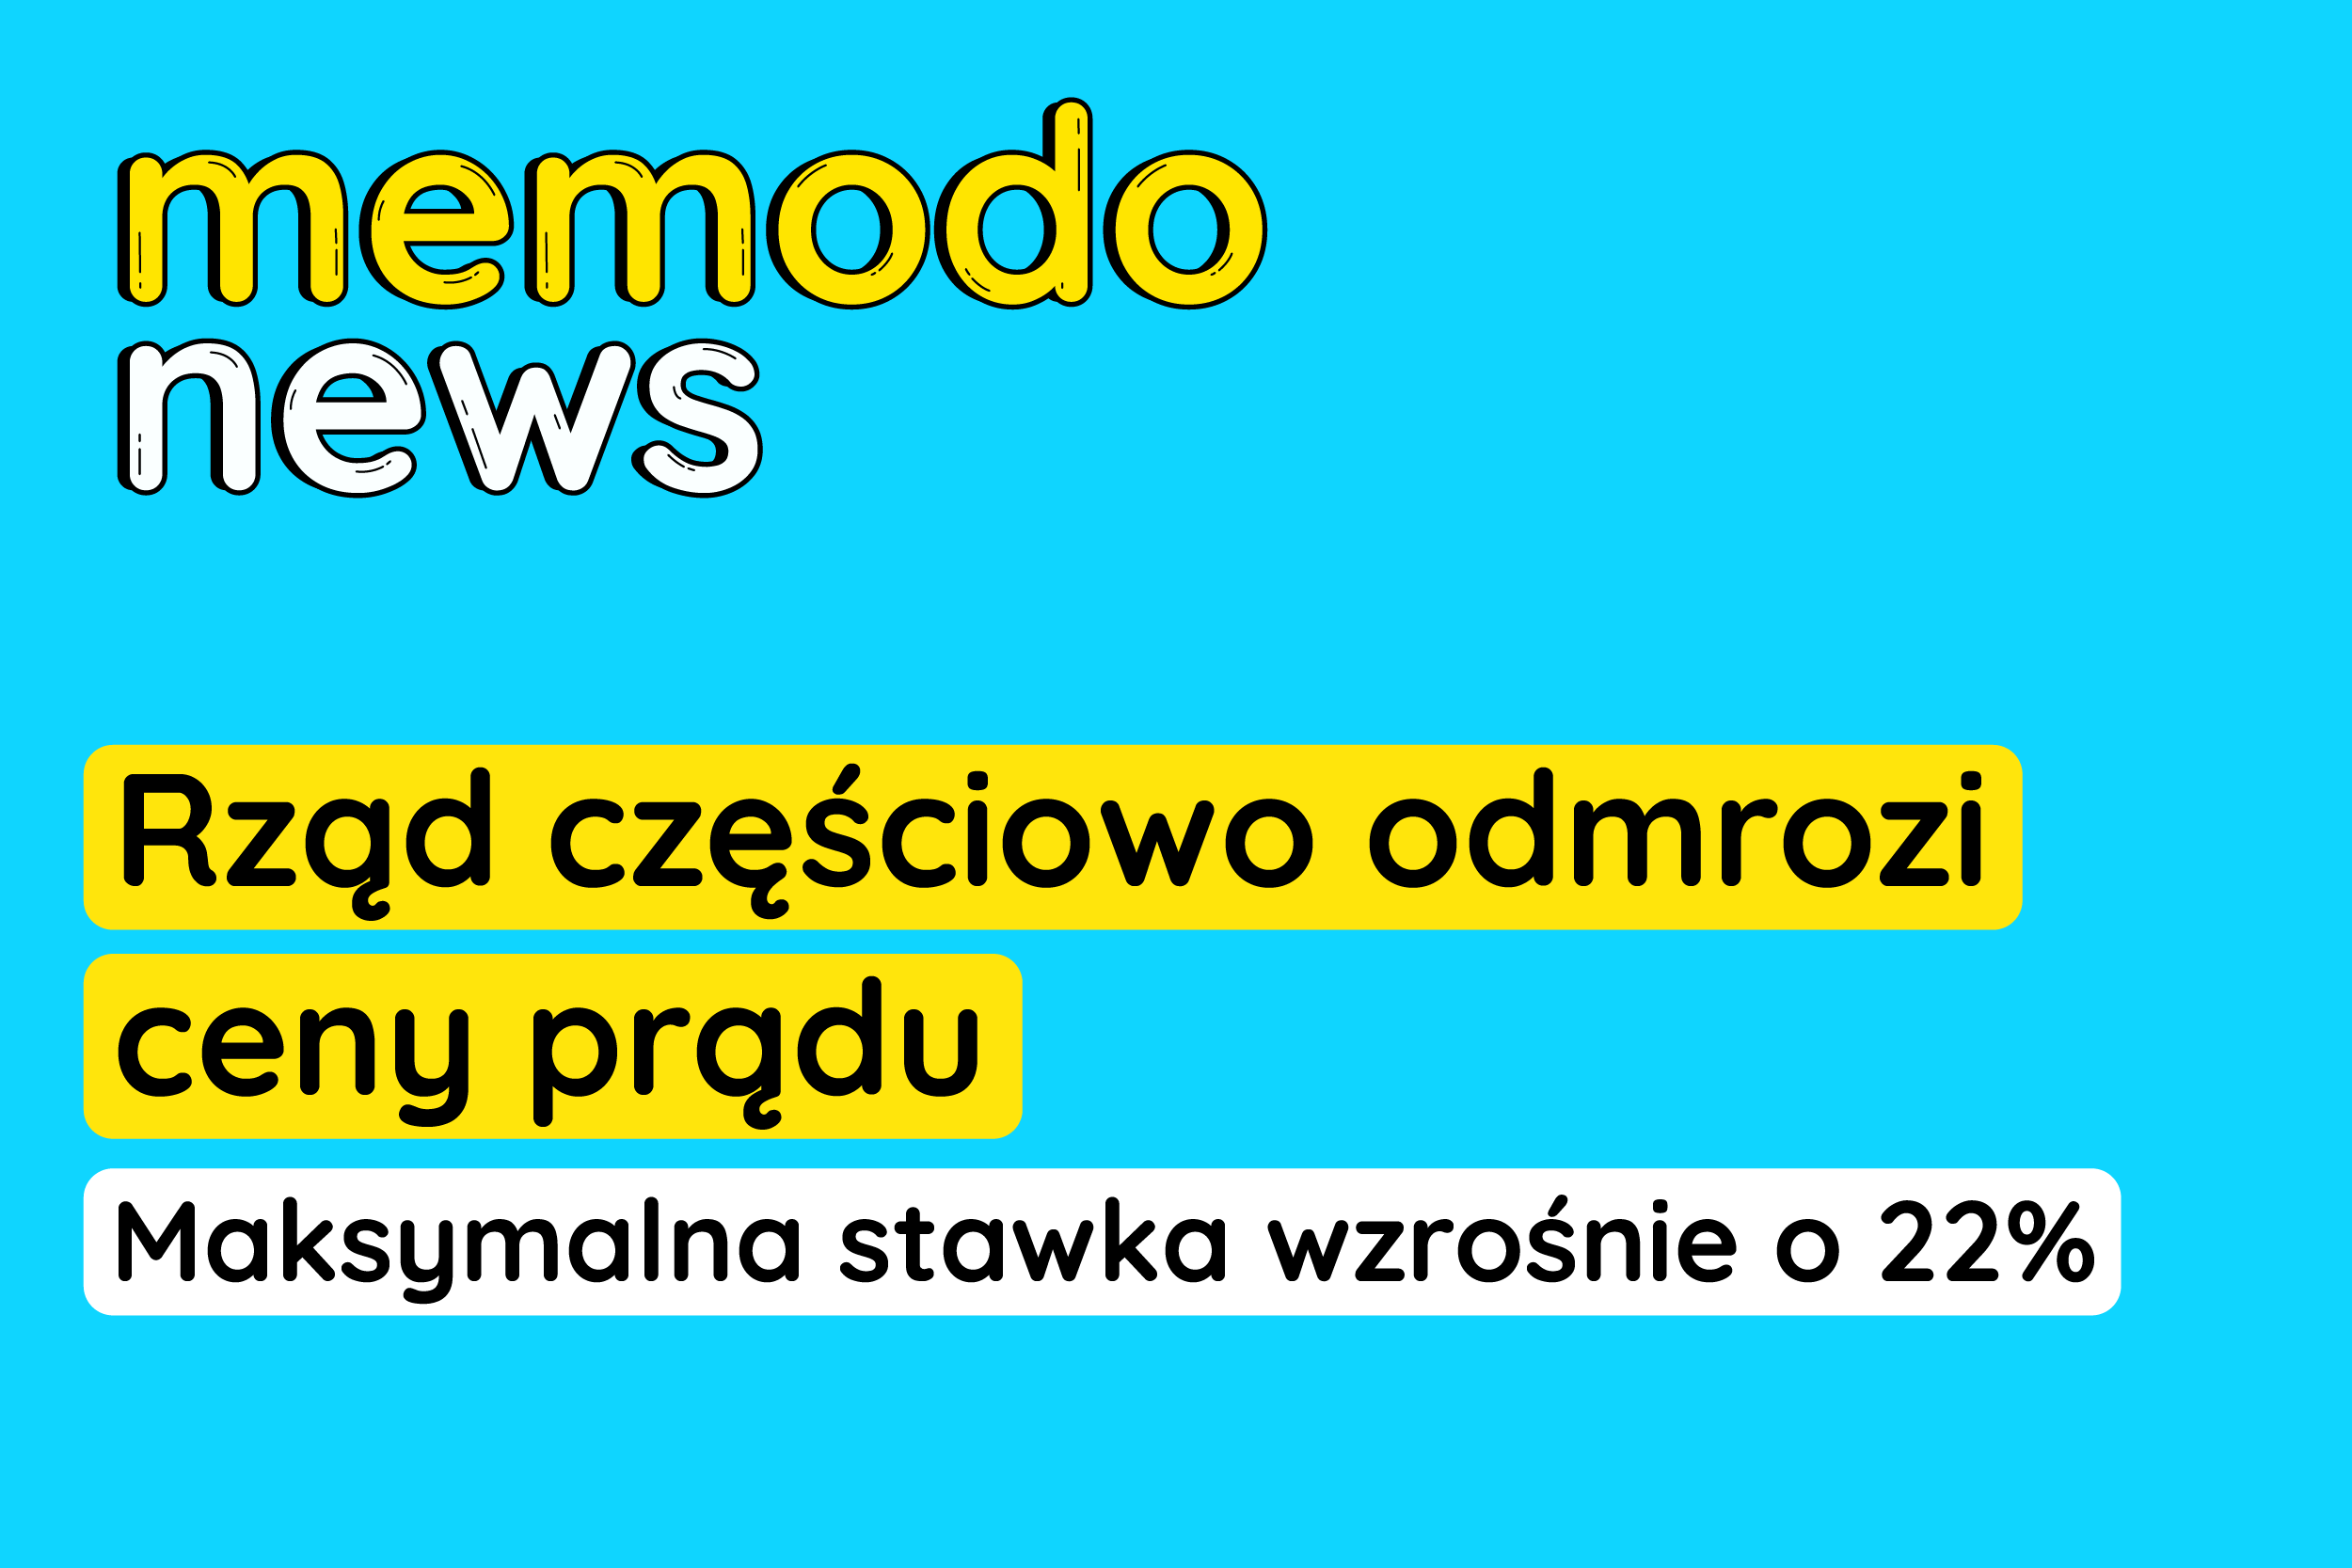 Memodo News 18.04